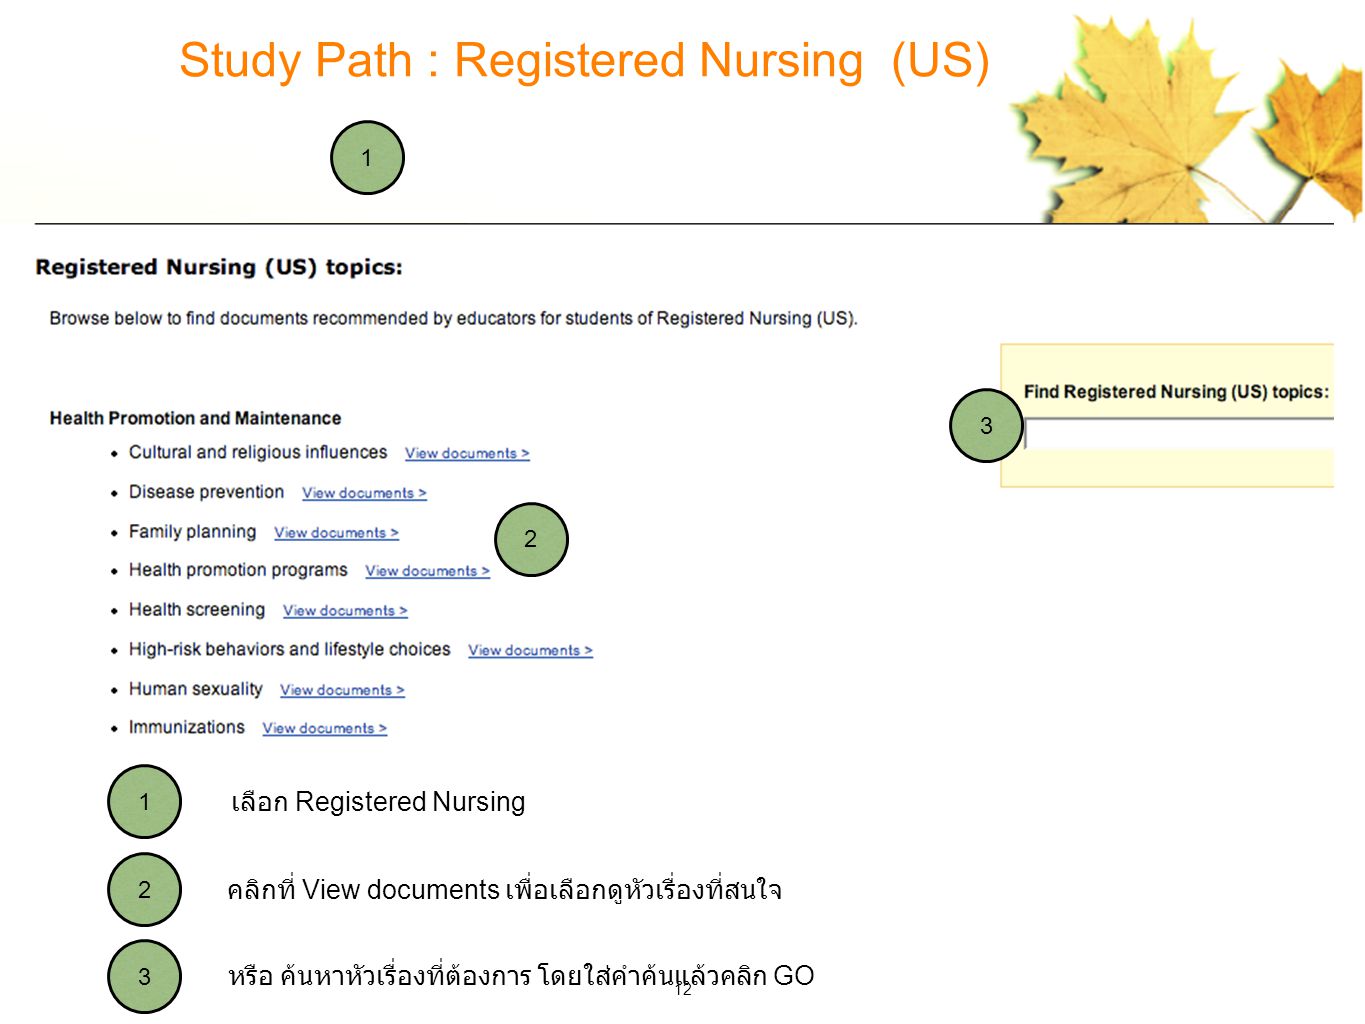 หรือ ค้นหาหัวเรื่องที่ต้องการ โดยใส่คำค้นแล้วคลิก GO คลิกที่ View documents เพื่อเลือกดูหัวเรื่องที่สนใจ เลือก Registered Nursing Study Path : Registered Nursing (US)